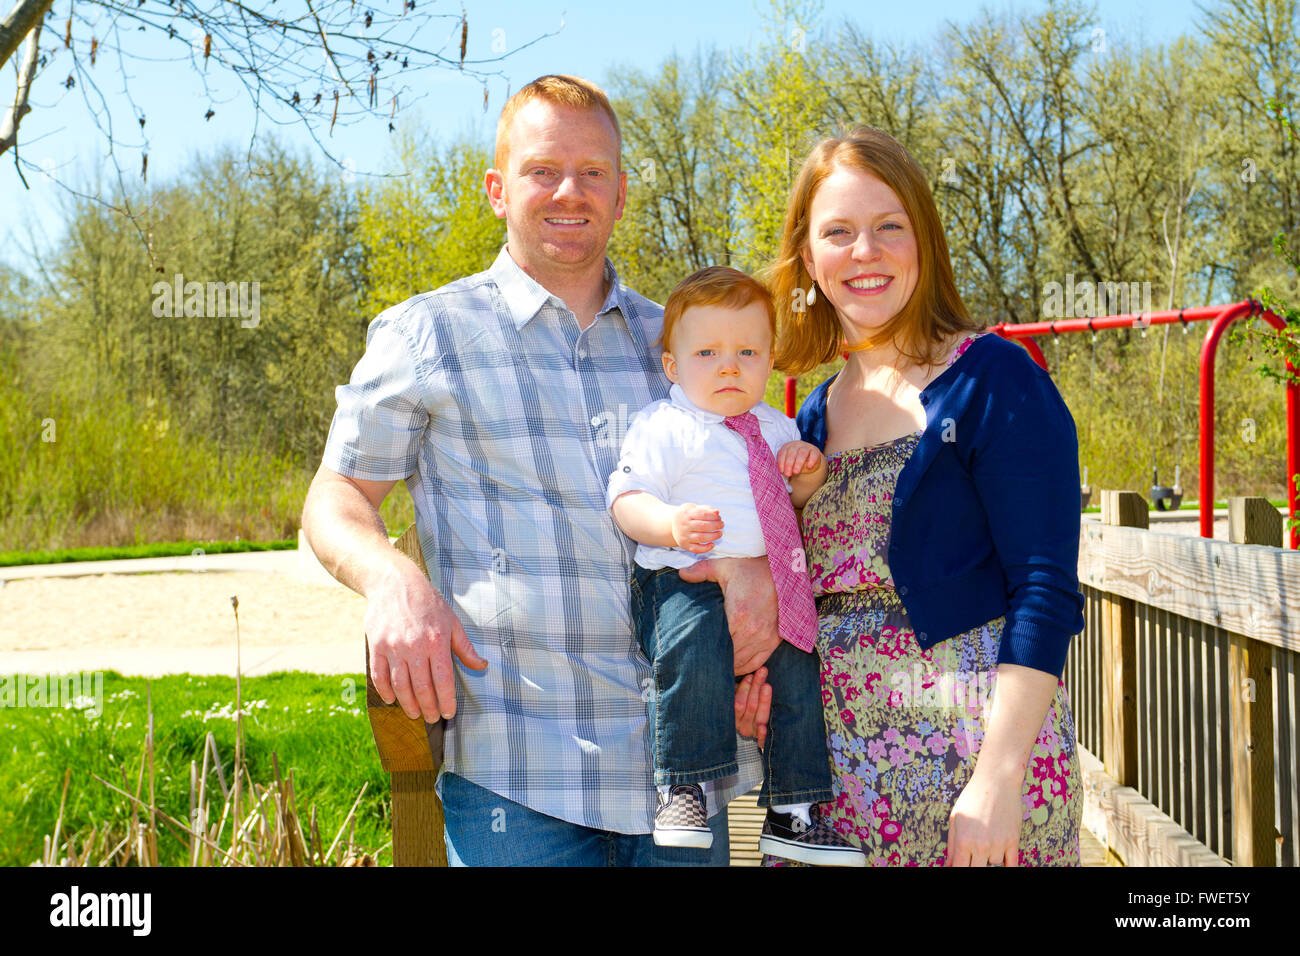 Ein Mann und eine Frau festhalten ihr Baby ein Jahr alt Sohn und posieren für ein Familienfoto im Freien. Stockfoto